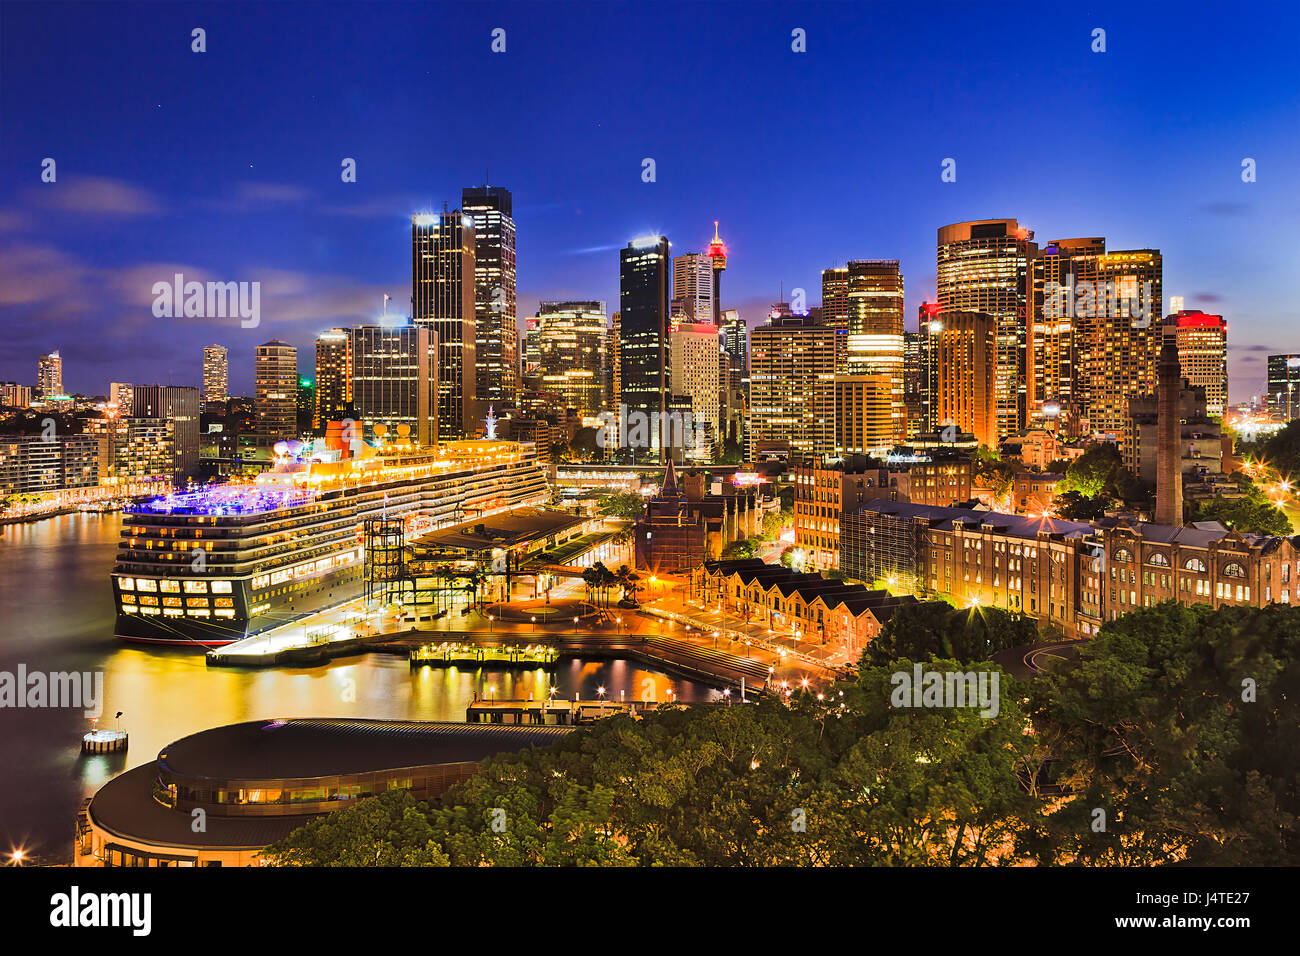 Sydney Harbour um kreisförmige Quan und die Felsen, die hell erleuchtet bei Sonnenuntergang. Beliebte Tourismusdestination aus Übersee Passagierterminal und syd Stockfoto